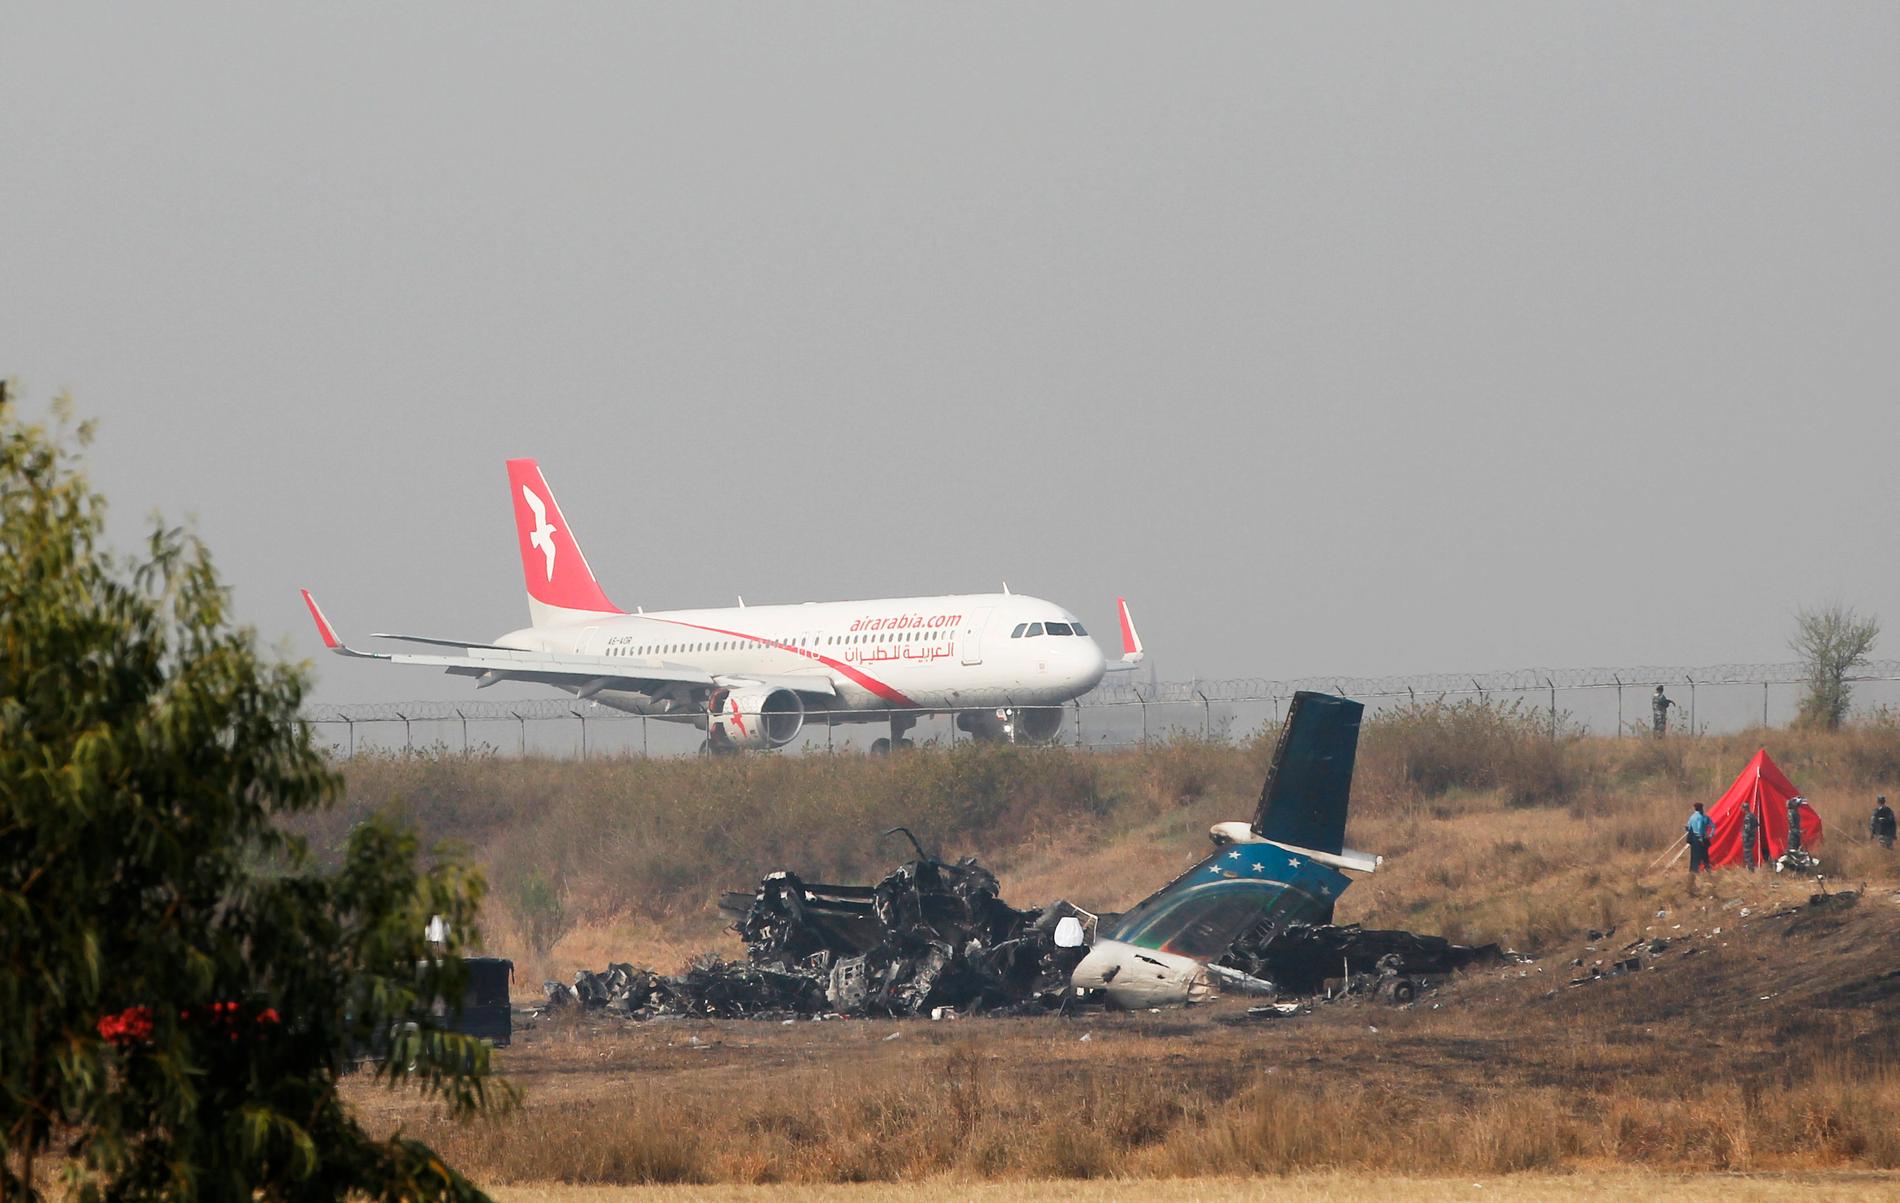 Det utbrunna US-Bangla-flygplanet bredvid landningsbanan i Nepal den 13 mars 2018, dagen efter kraschen.